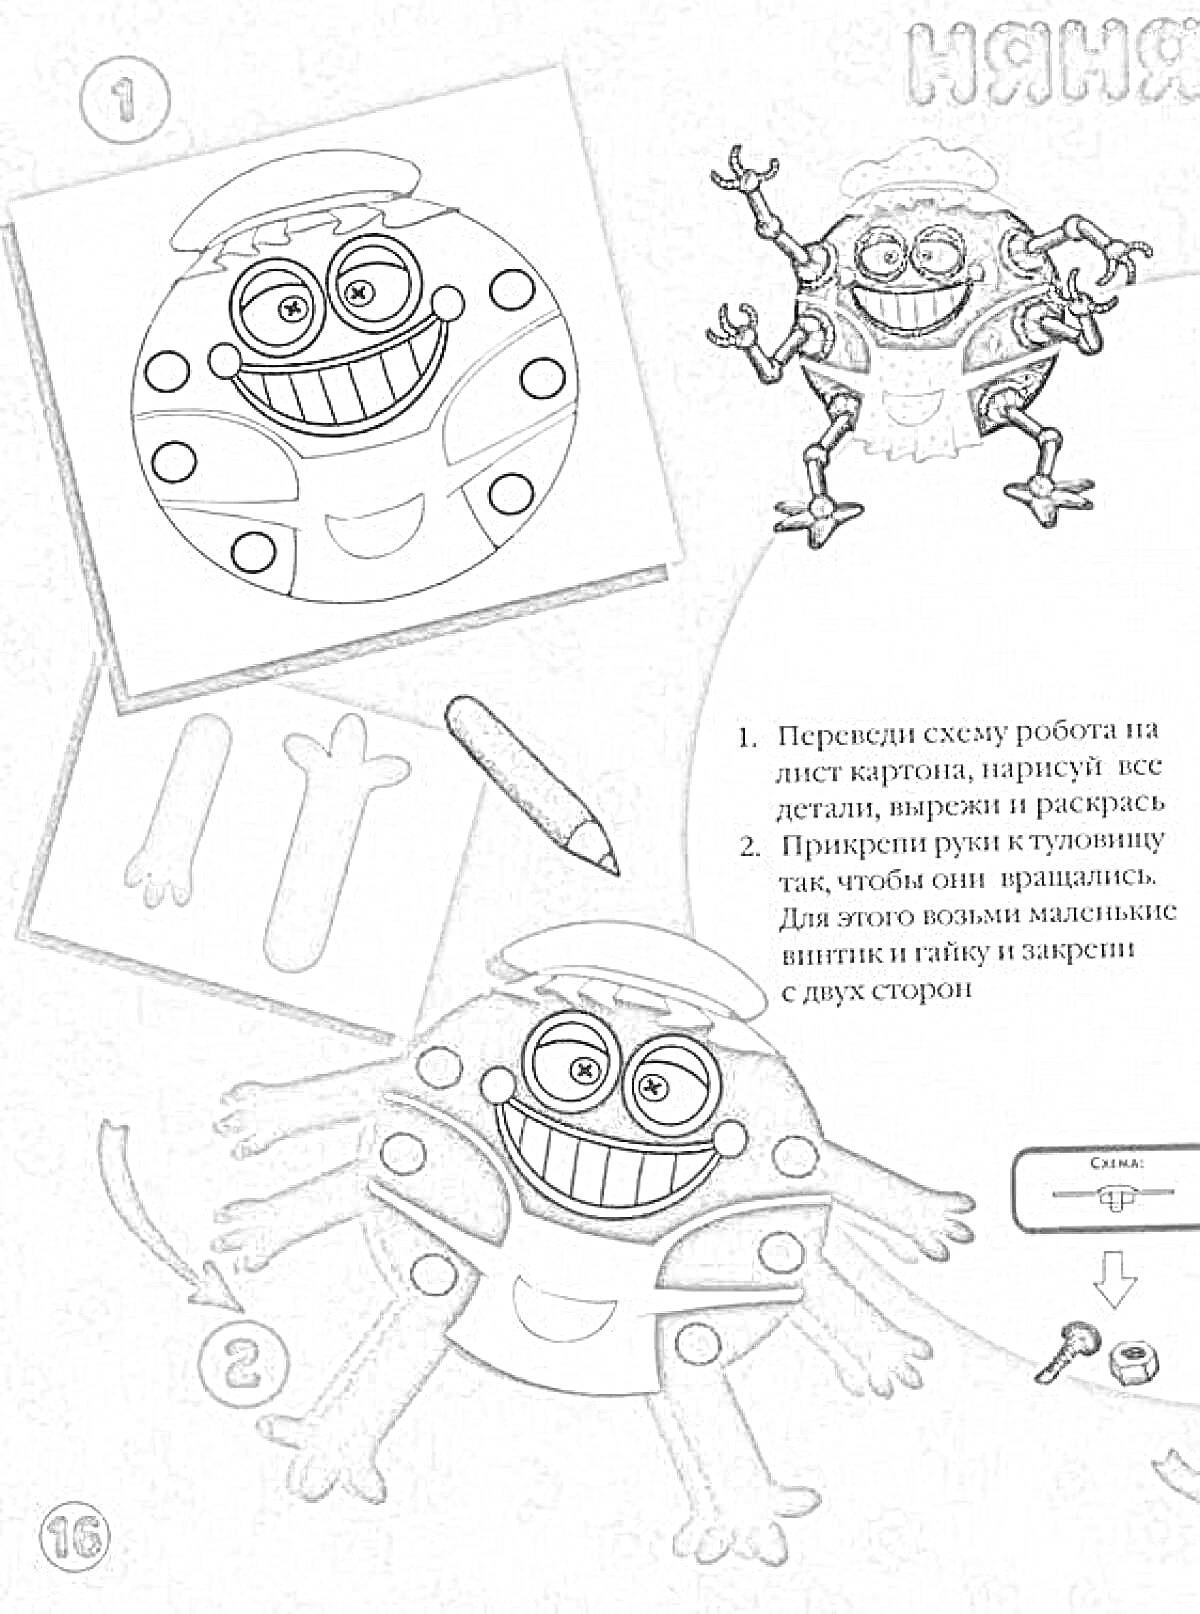 Раскраска робот-няня с подсказками для раскраски и сборки, включает схему робота на листе, детали рук и туловища, цветные карандаши, кнопки и гвоздики